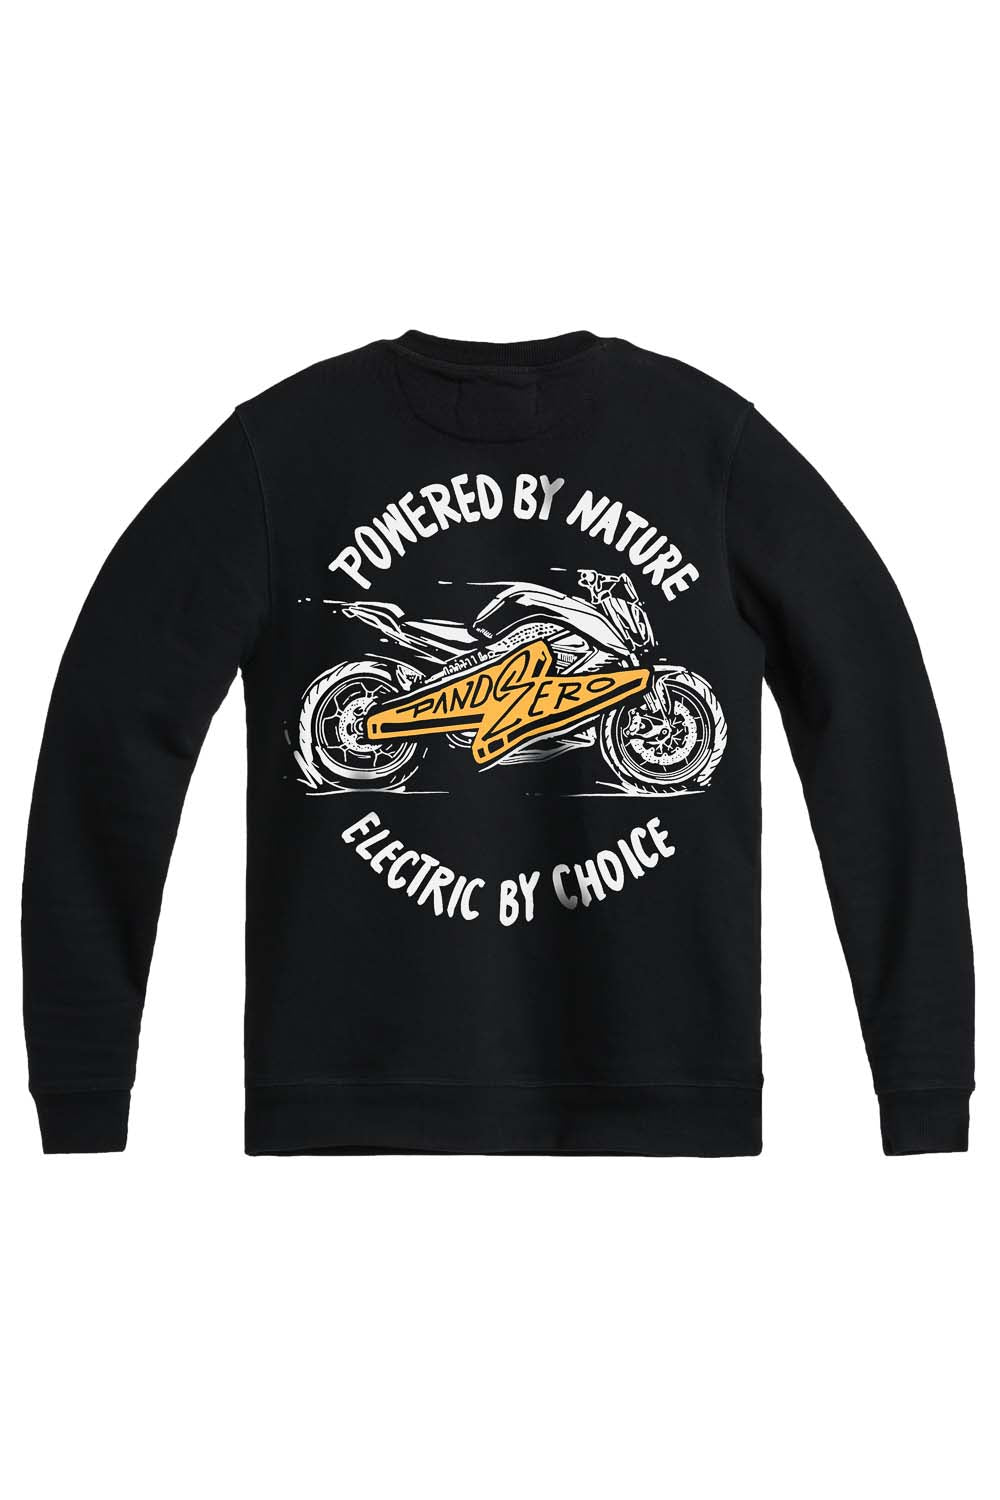 Pando Moto JOHN ZERO 1 Sweatshirt